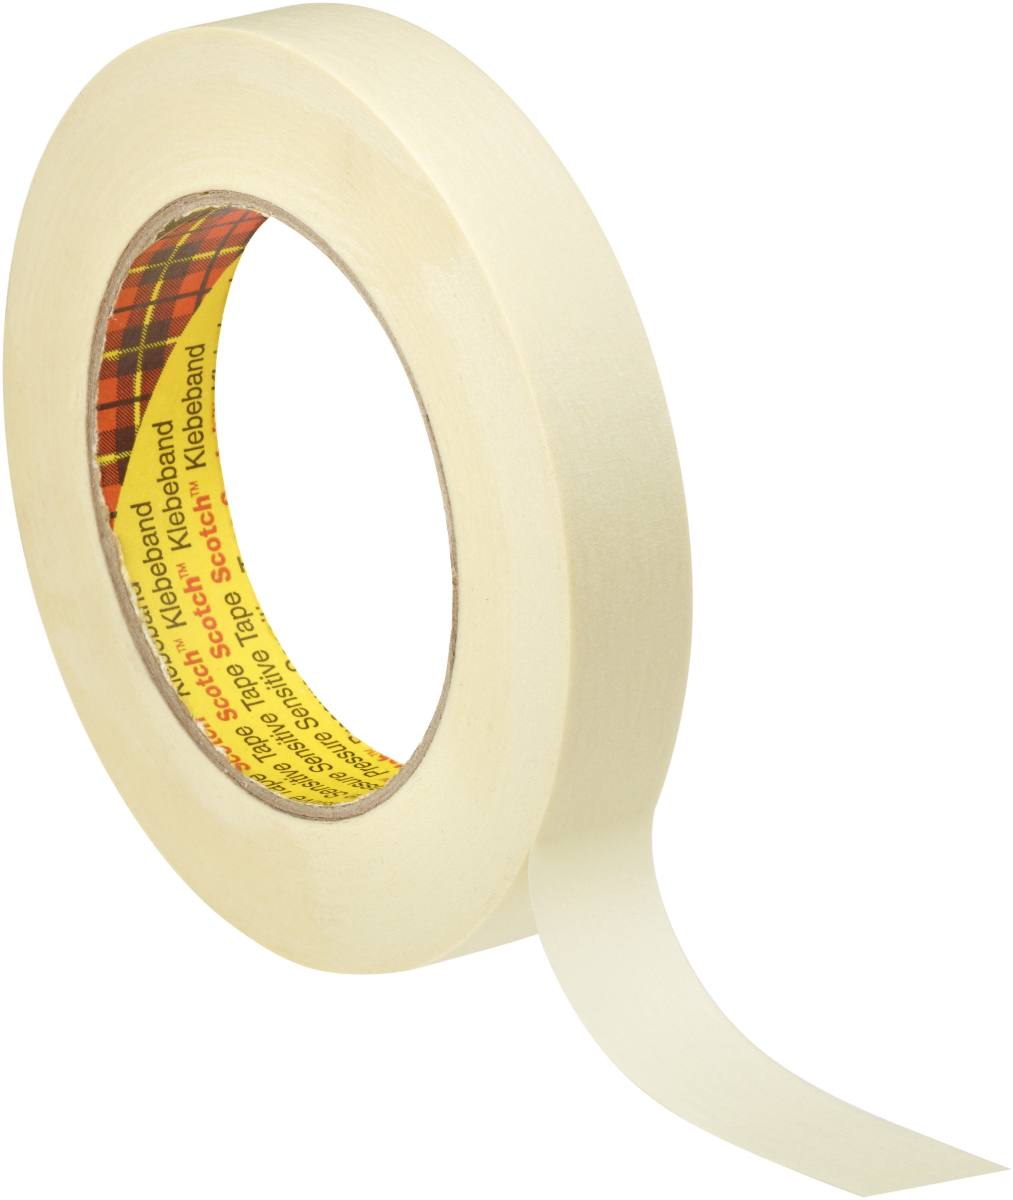 3M Scotch masking tape P3630, 36 mm x 50 m